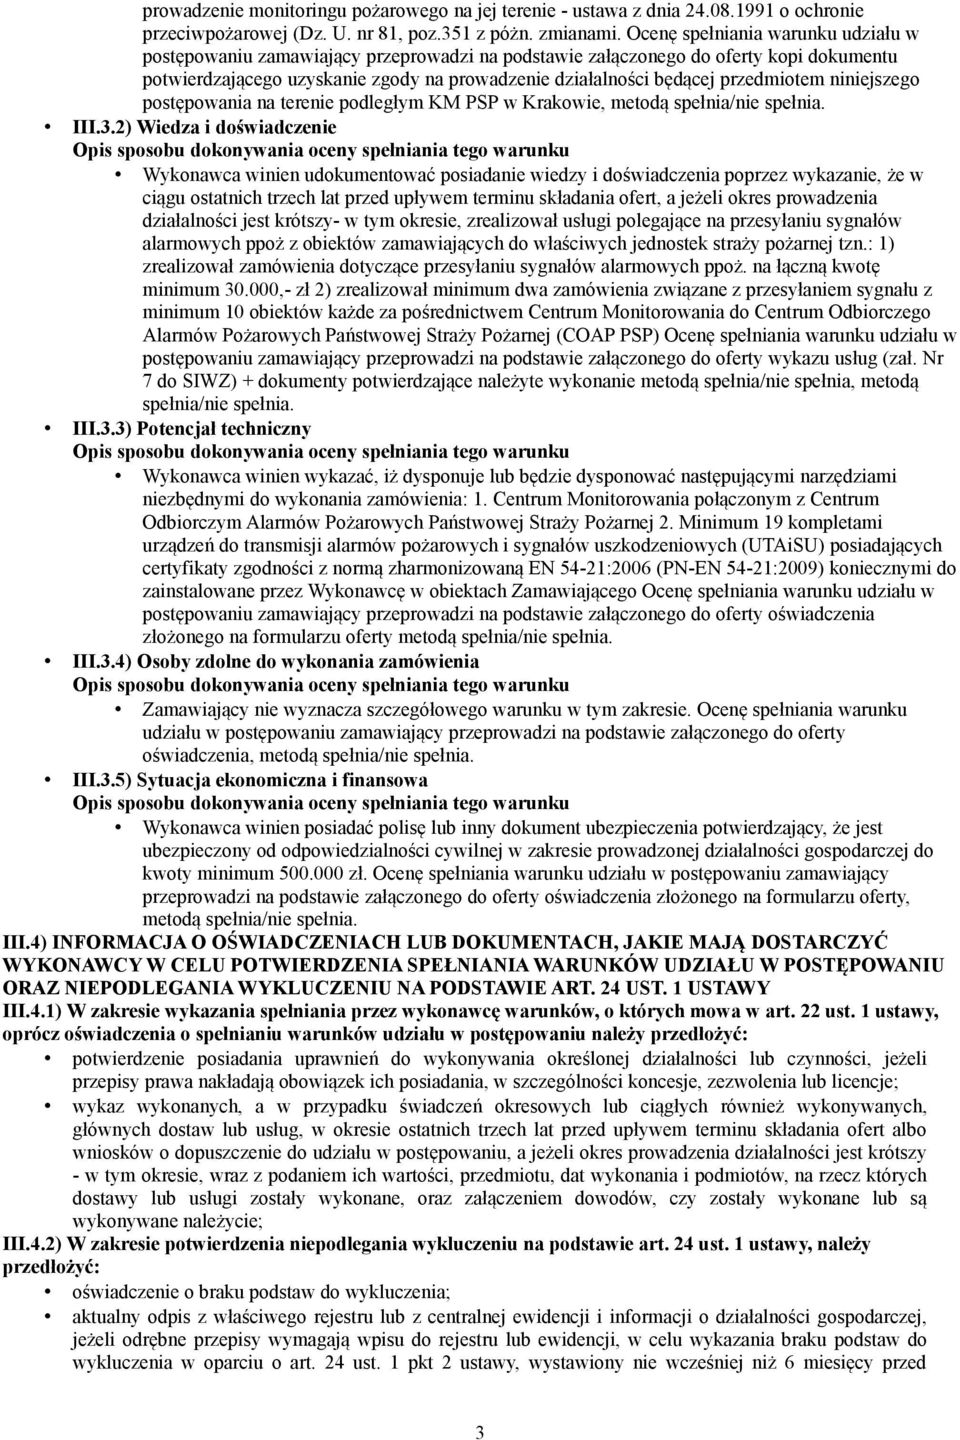 przedmiotem niniejszego postępowania na terenie podległym KM PSP w Krakowie, metodą spełnia/nie spełnia. III.3.